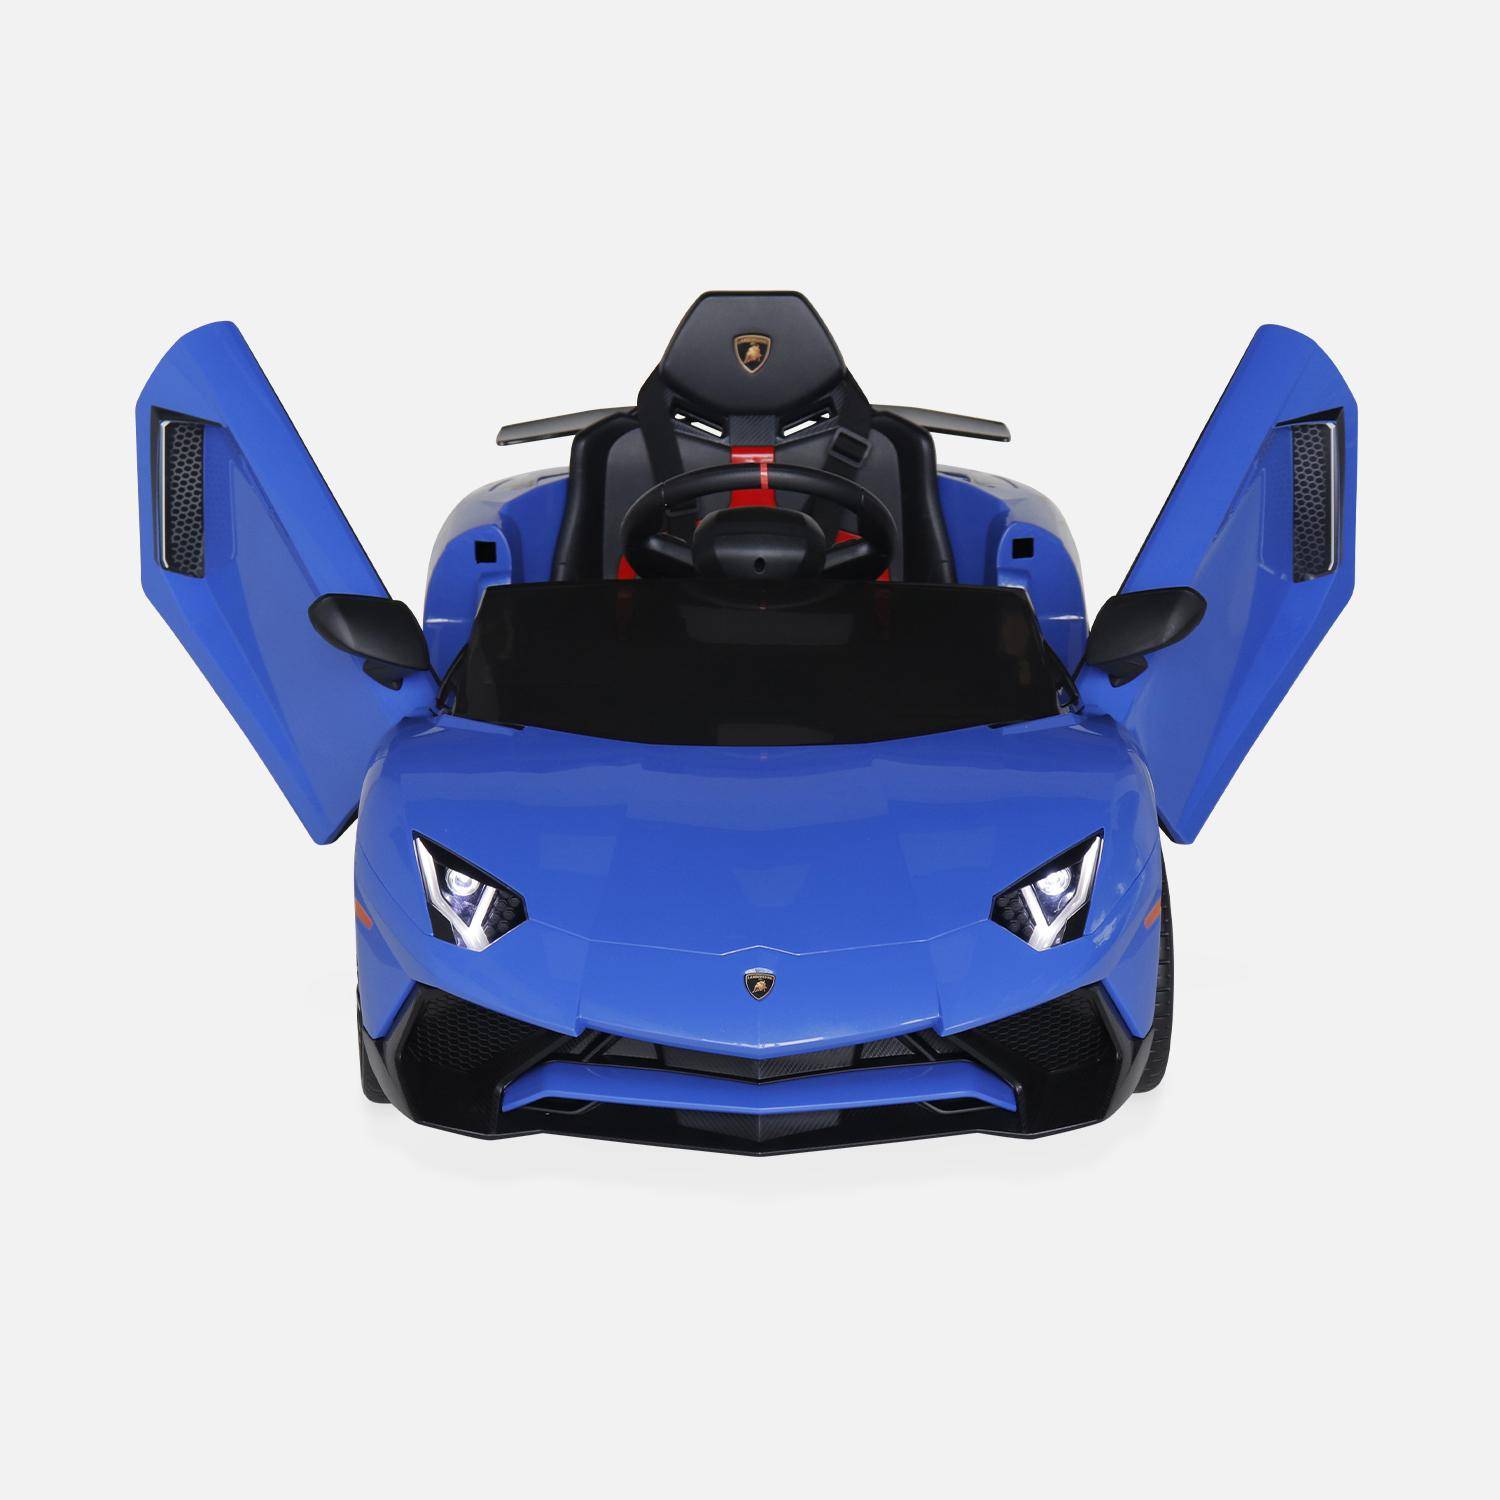 12V elektrische Lamborghini kinderauto, blauw, 1 zitplaats, met radio, afstandsbediening, MP3, USB-poort en functionele koplampen,sweeek,Photo6